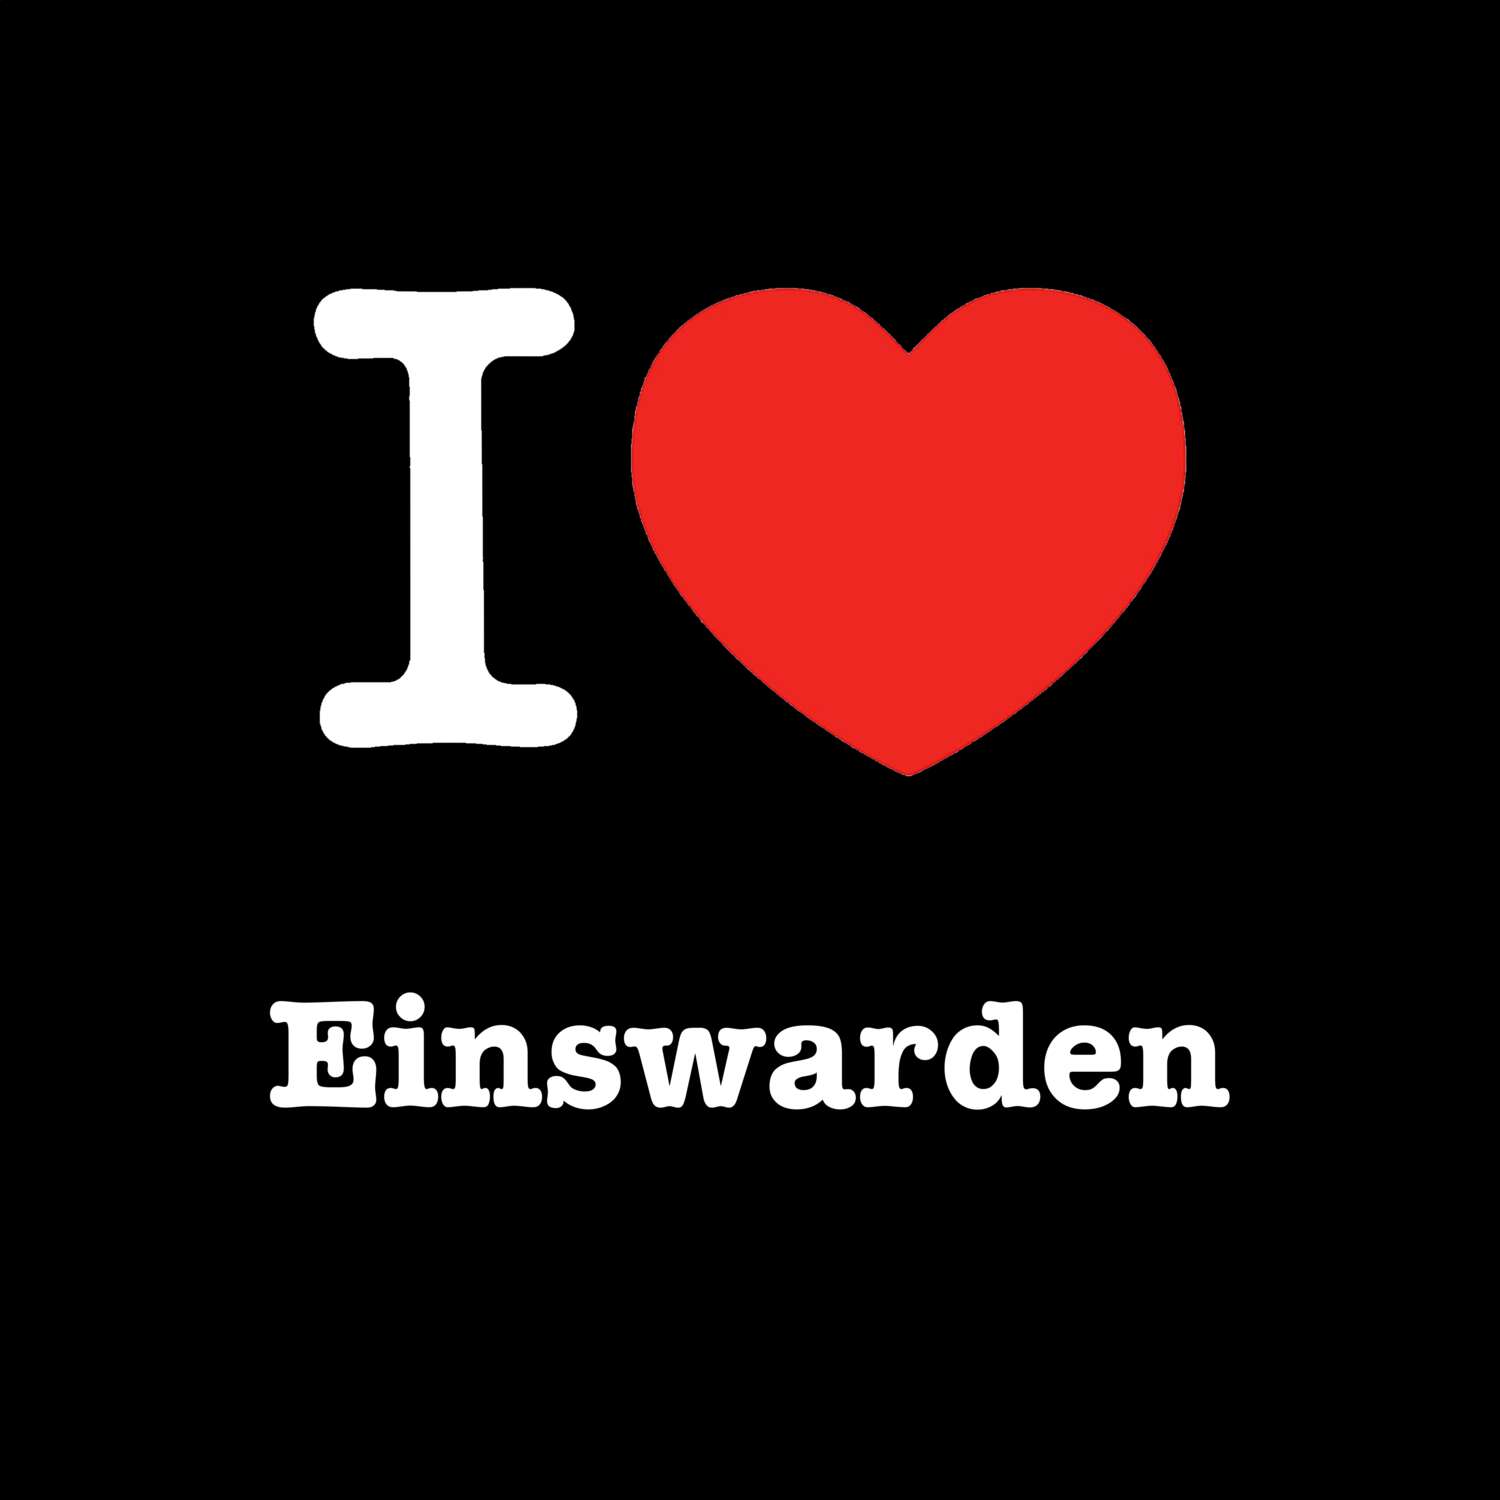 Einswarden T-Shirt »I love«